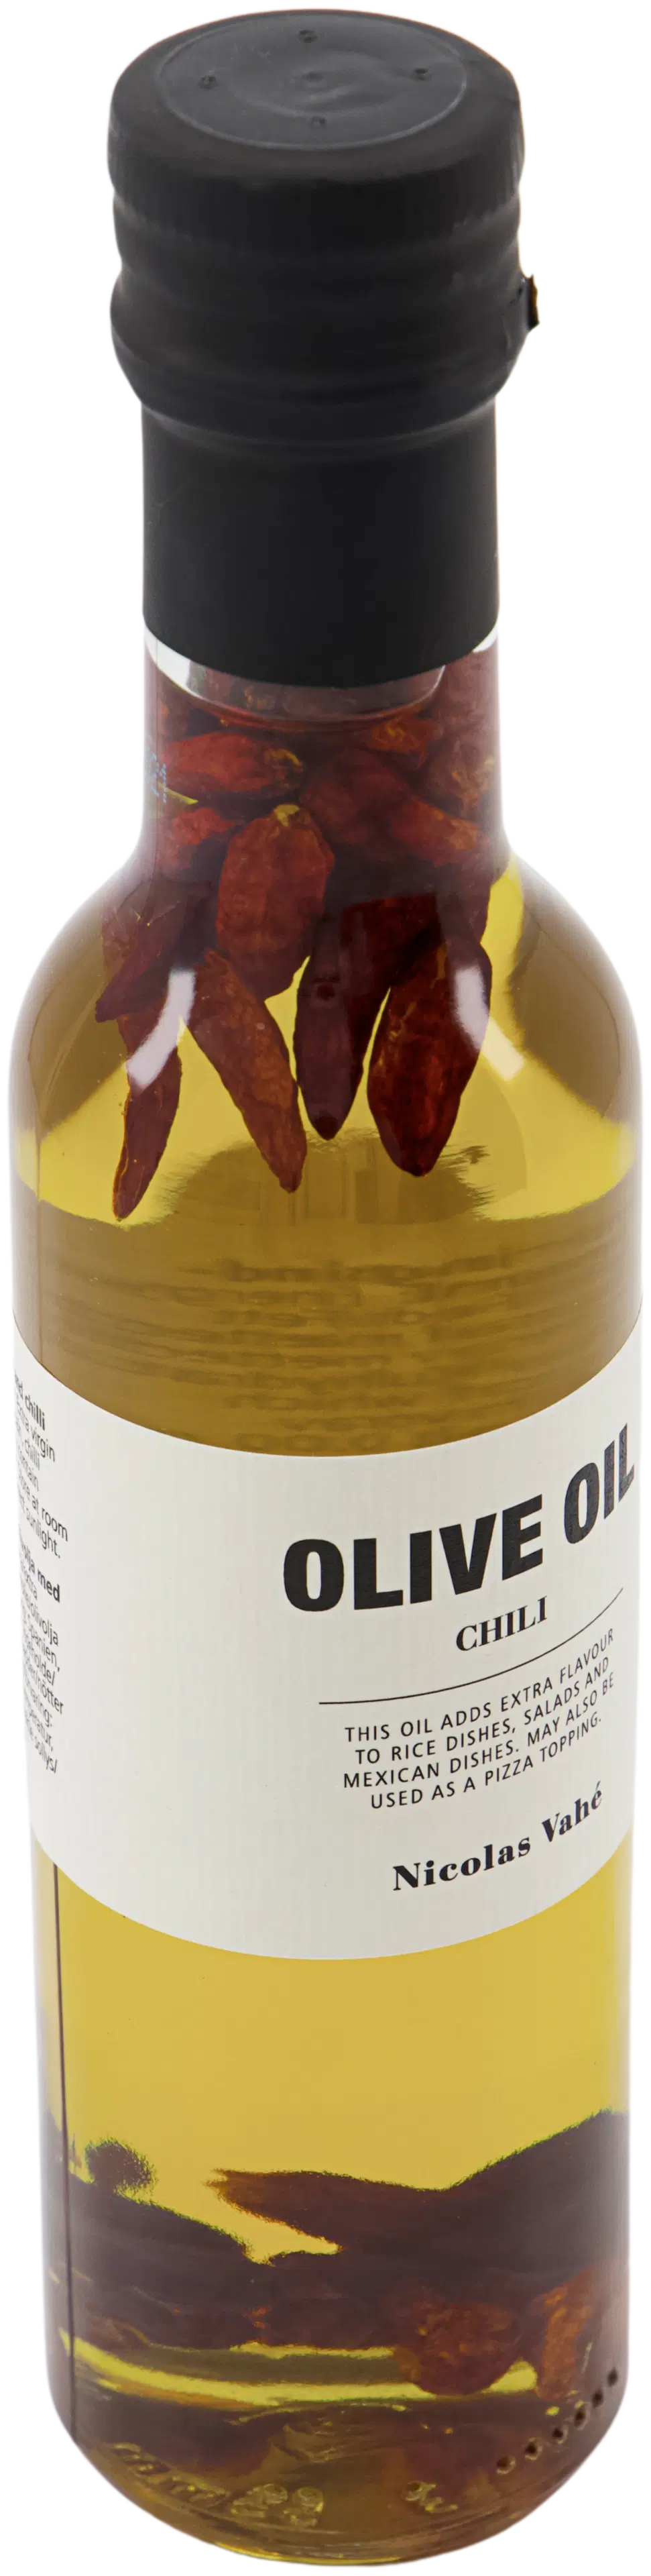 Nicolas Vahé Chili oliiviöljy 25 cl